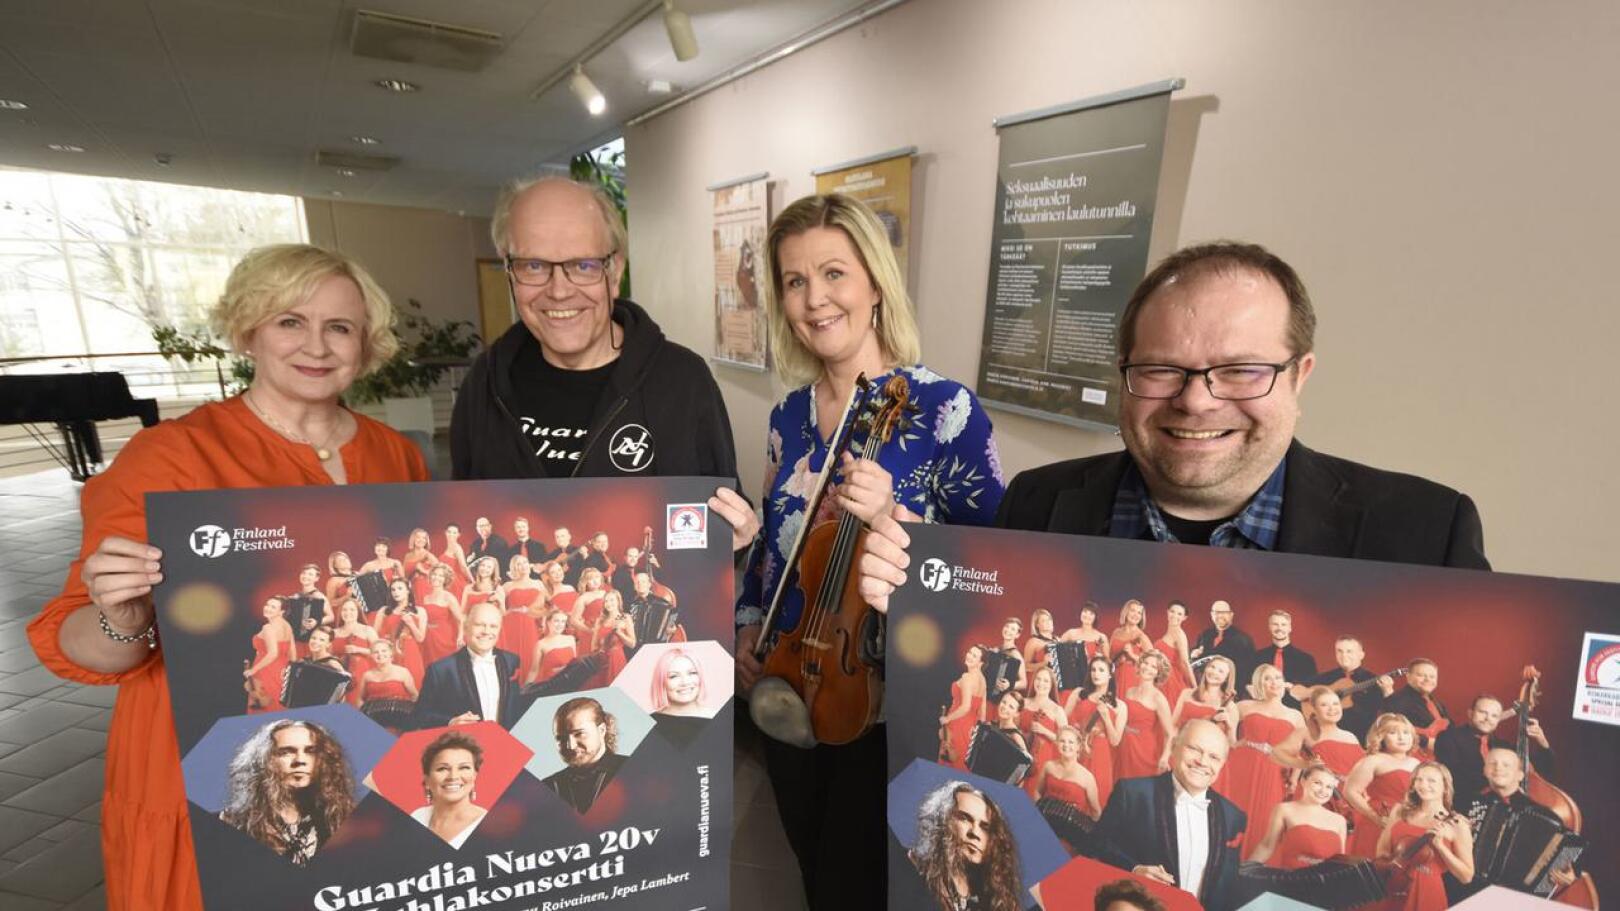 Guardia Nuevan juhlakonsertti järjestettiin toukokuussa Kokkolan jäähallissa. Arkistokuva. Kuvassa Anne Brandt (vas.), Raimo Vertainen, Heidi Kumpula ja Sami Luoma.